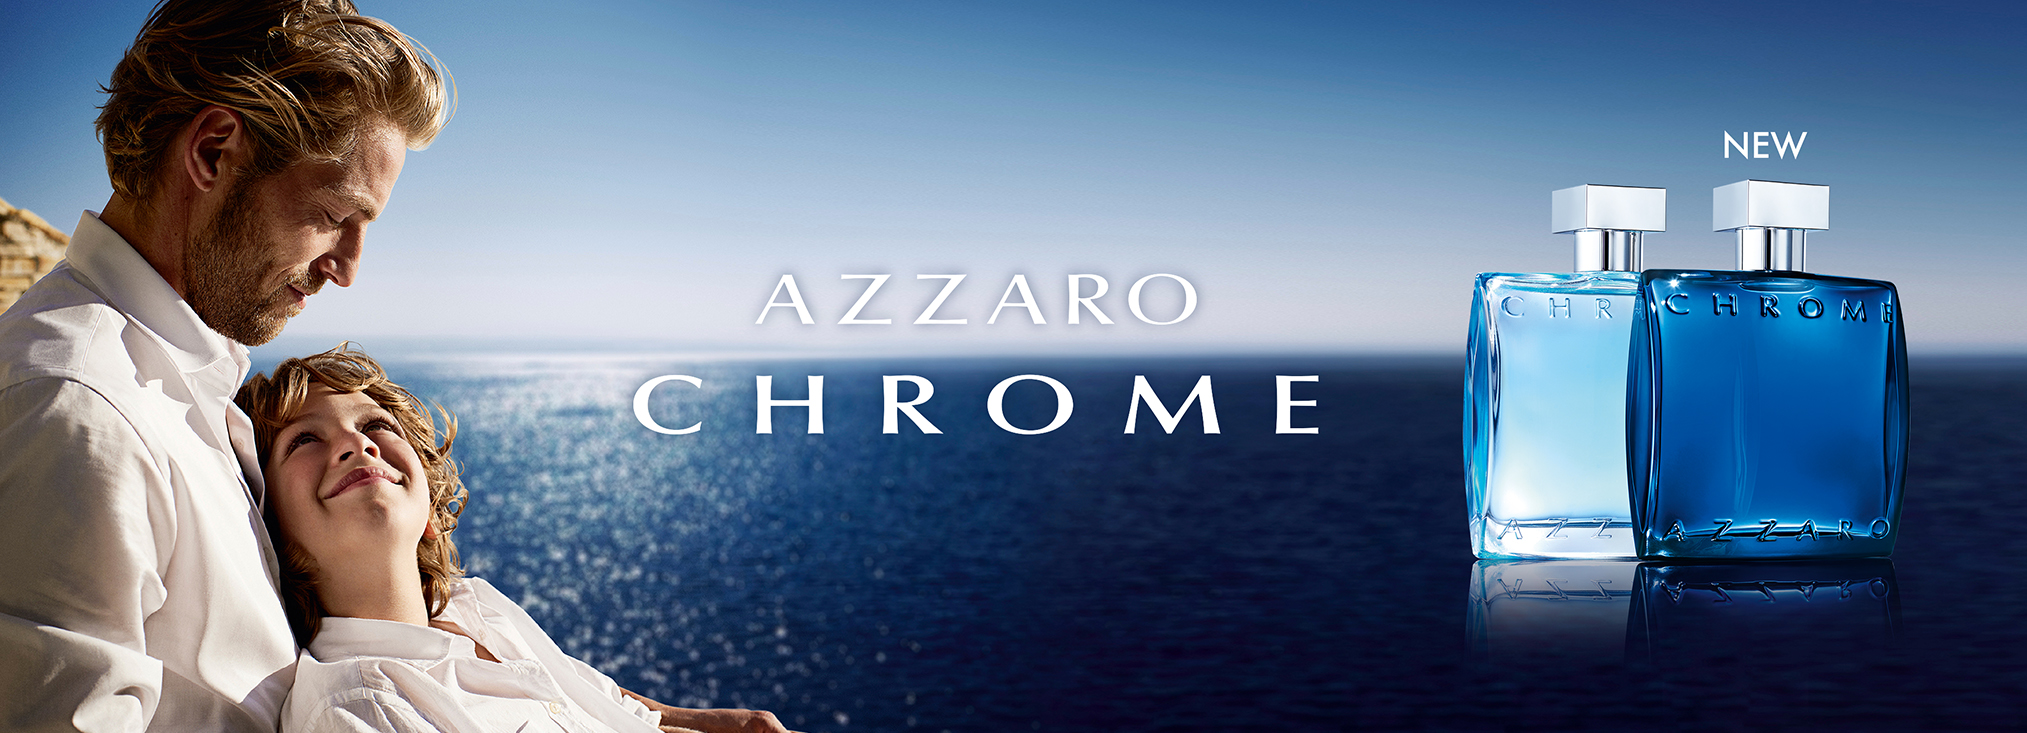 Azzaro_Chrome